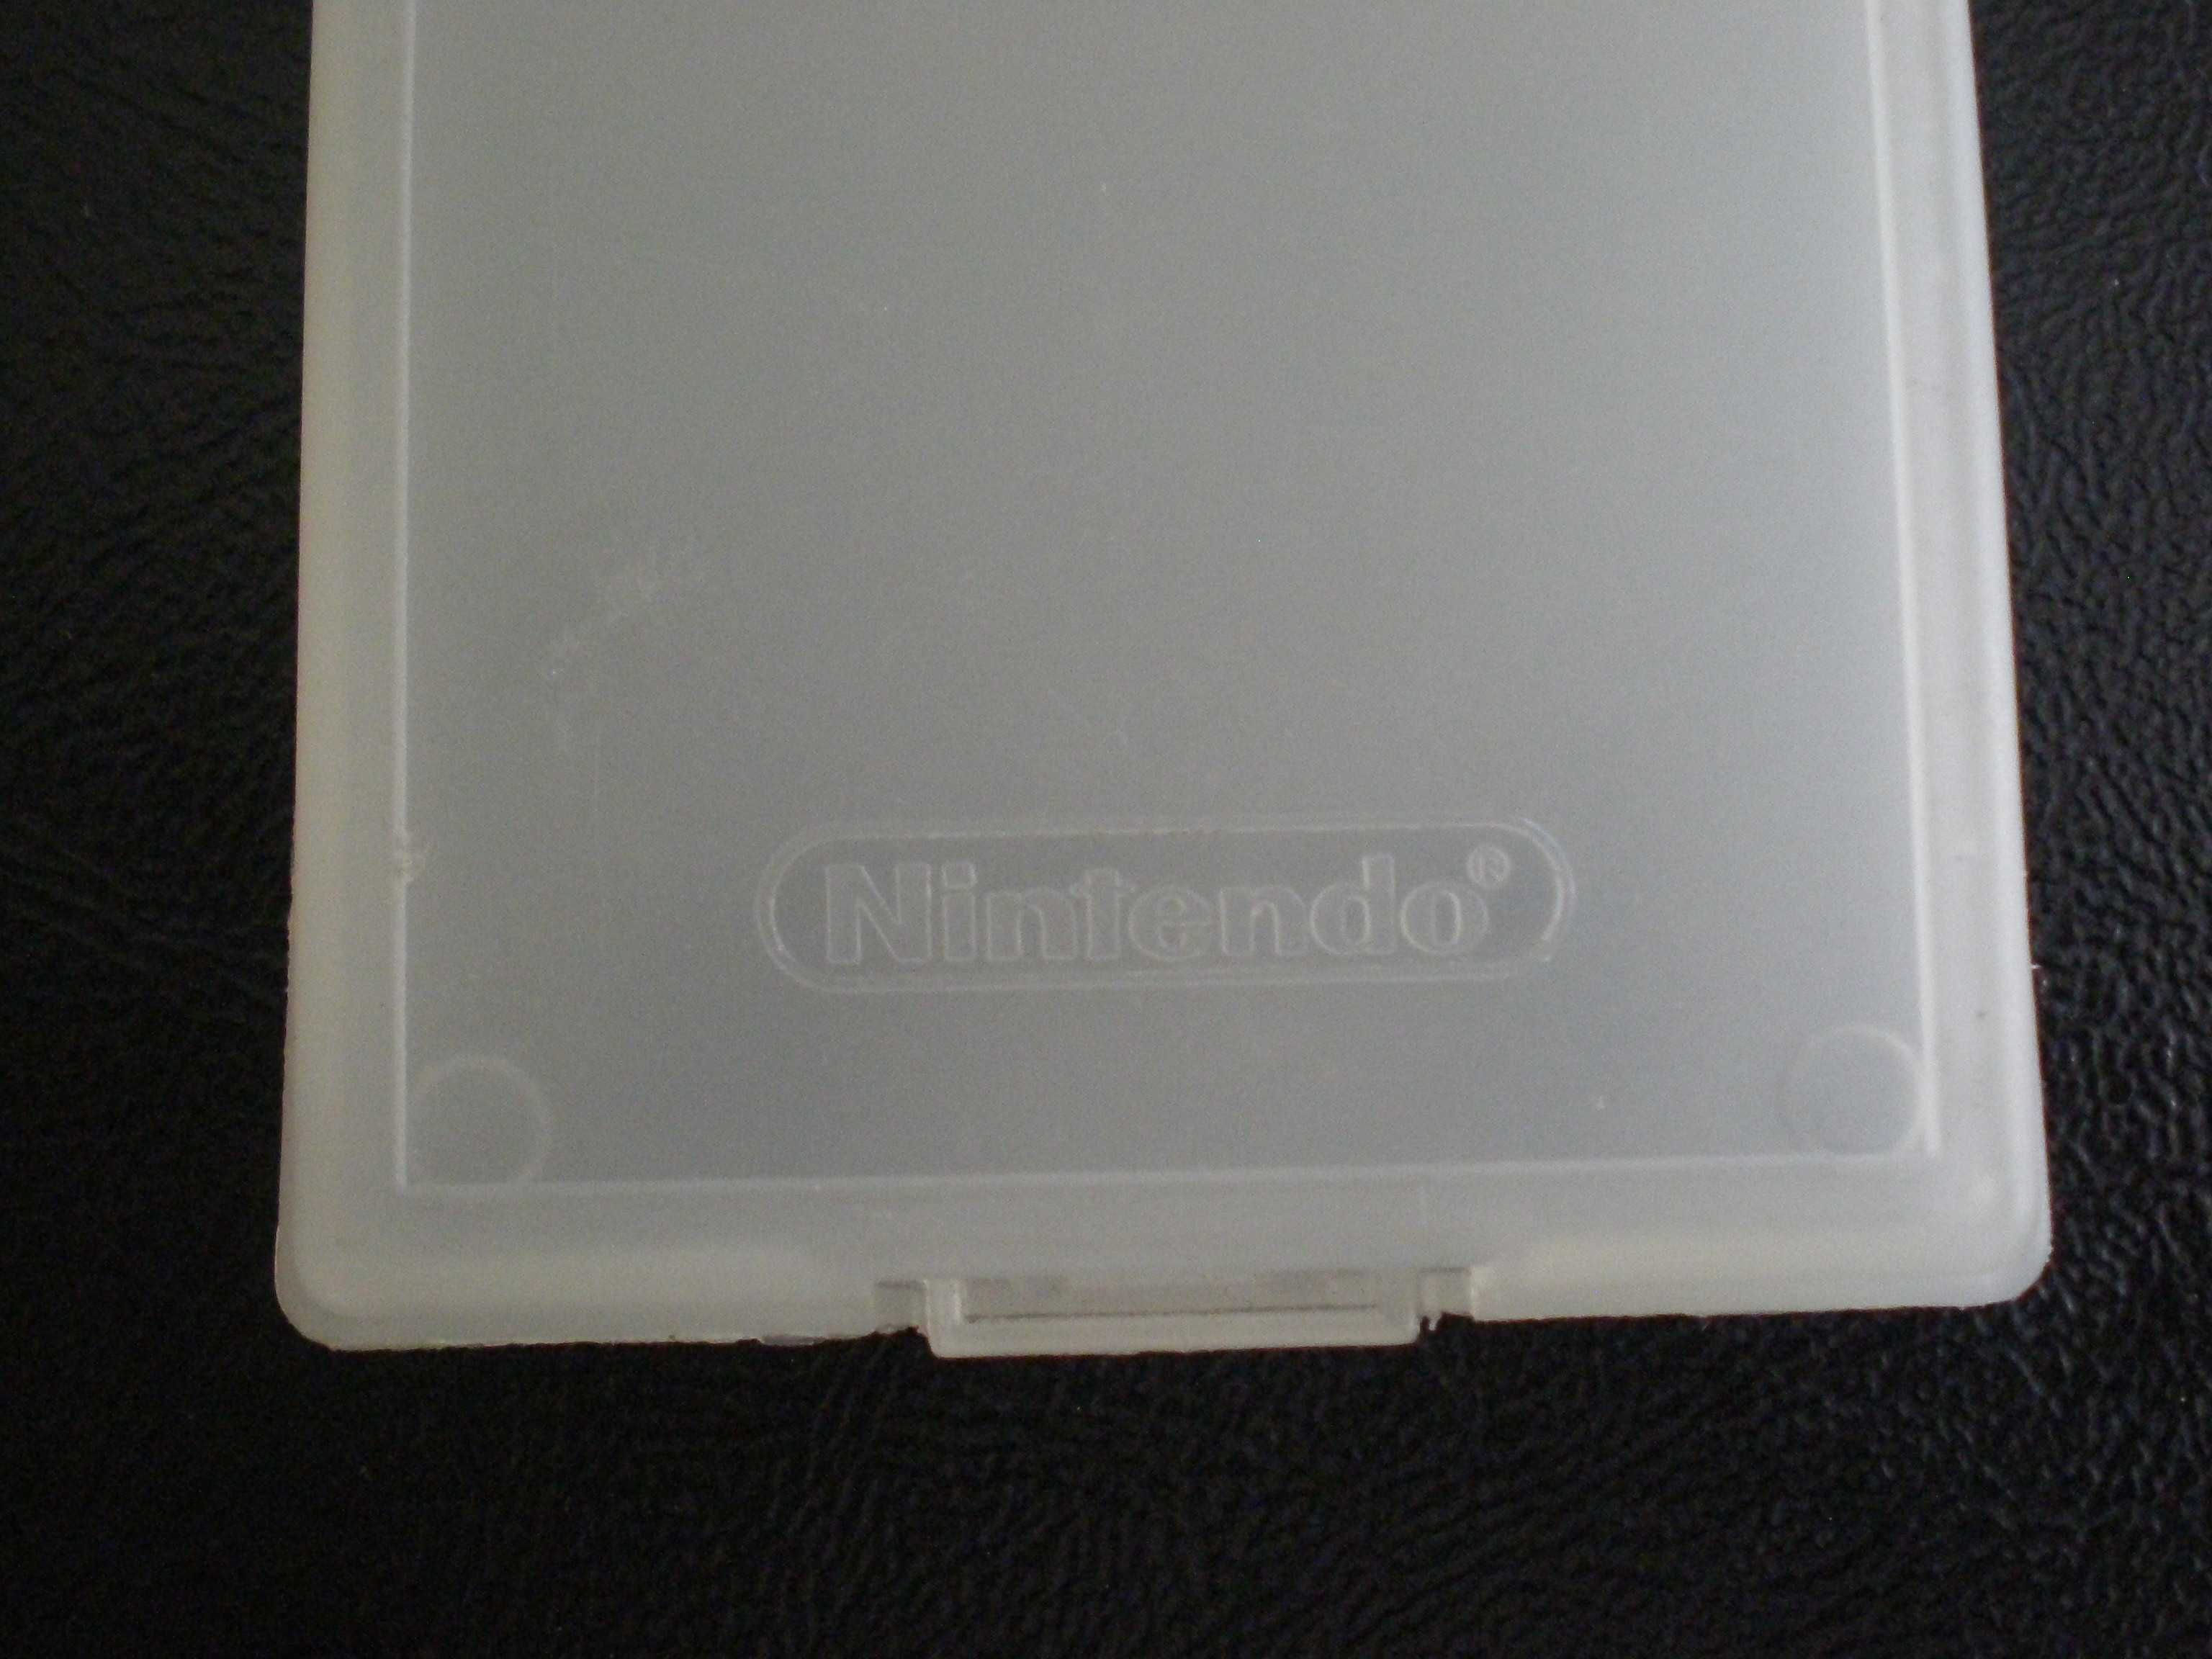 Nintendo Gameboy - caixas de plástico originais para guardar os jogos